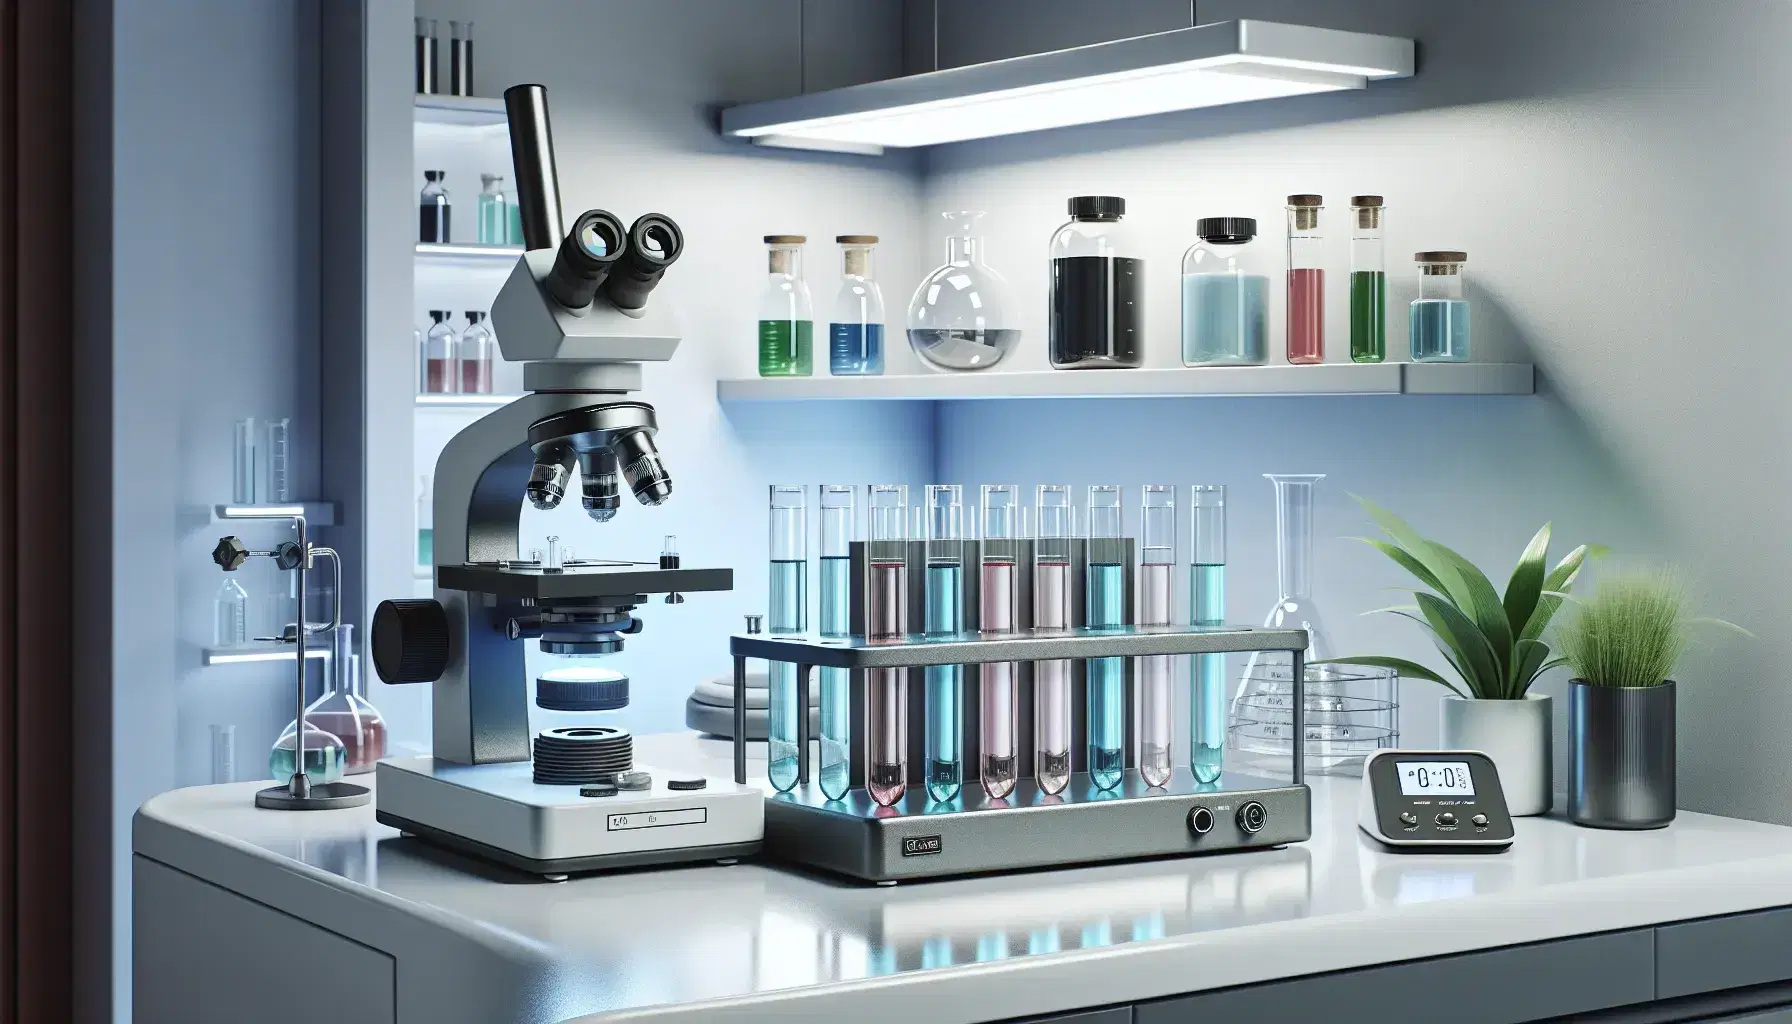 Laboratorio científico moderno y limpio con tubos de ensayo de colores en estante metálico, microscopio electrónico y balanza analítica digital, estantes con frascos de polvos coloridos.